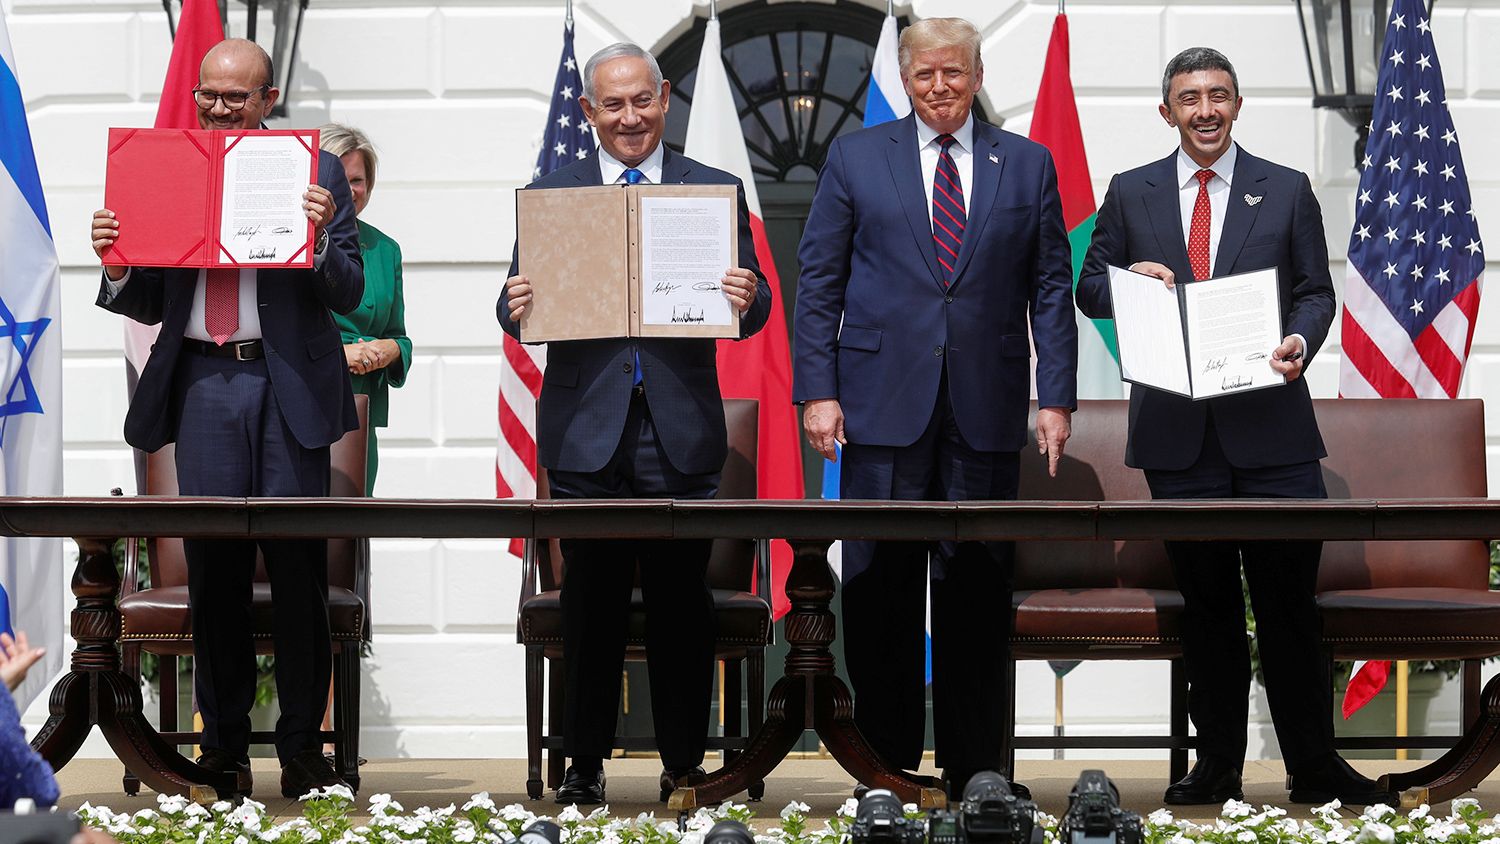 Израиль, ОАЭ и Бахрейн подписали в Белом доме соглашение о мире